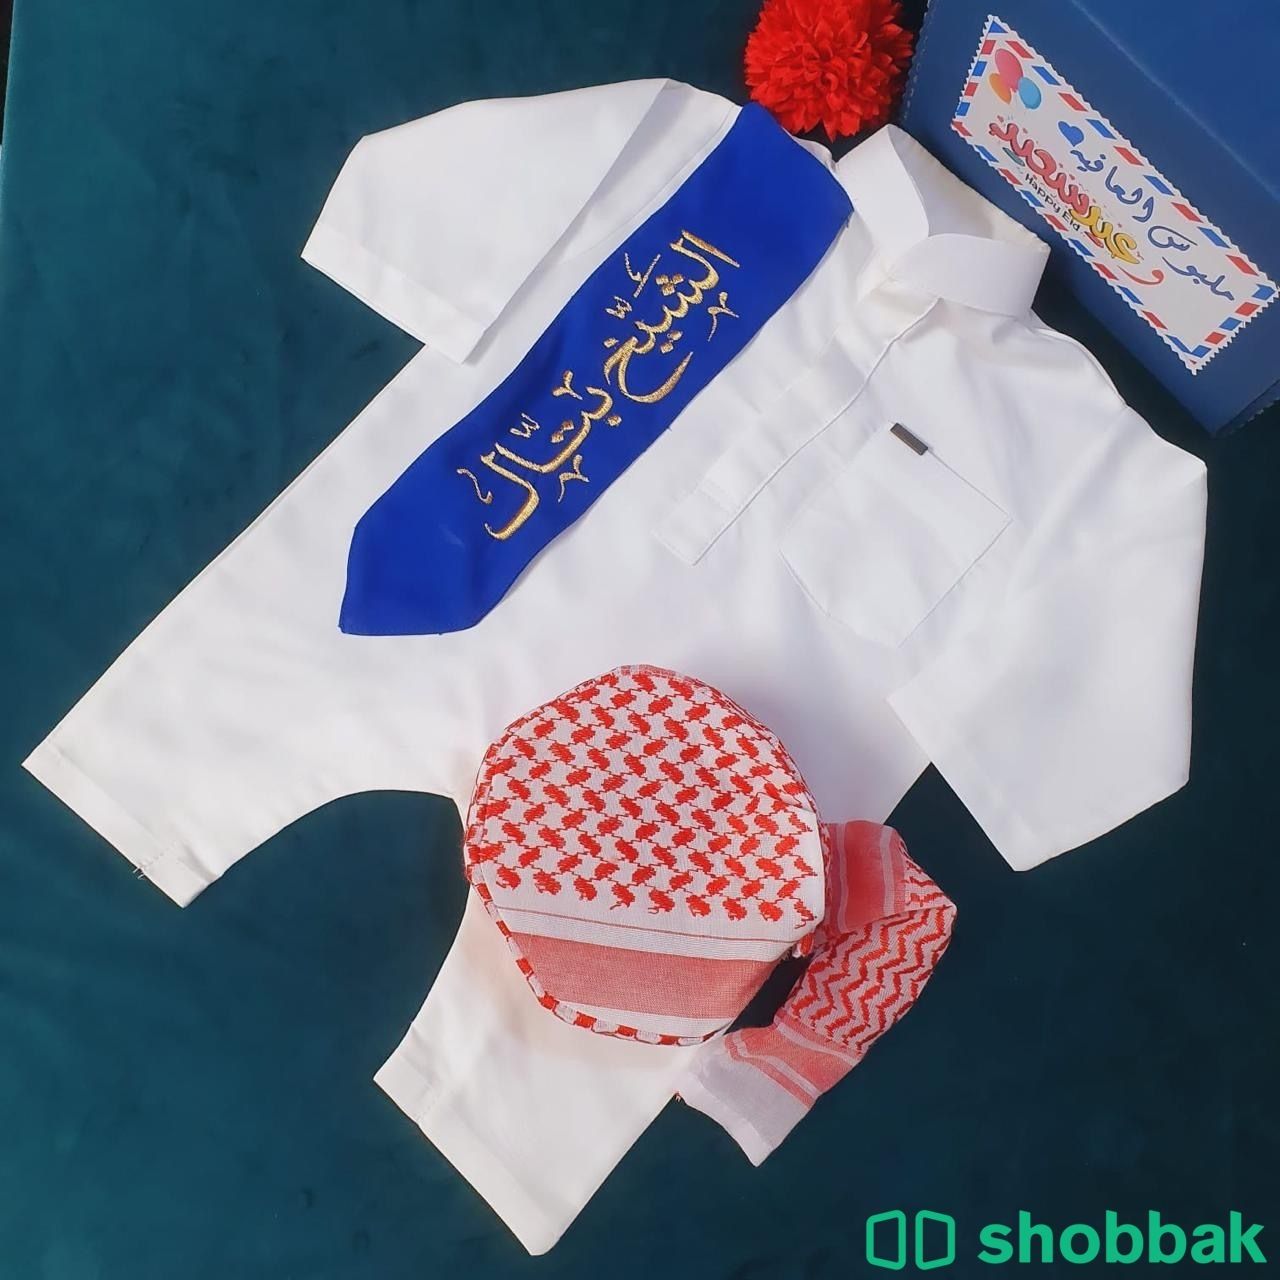 بربتوز اطفالي مع شال وشماغ بالاسم  Shobbak Saudi Arabia